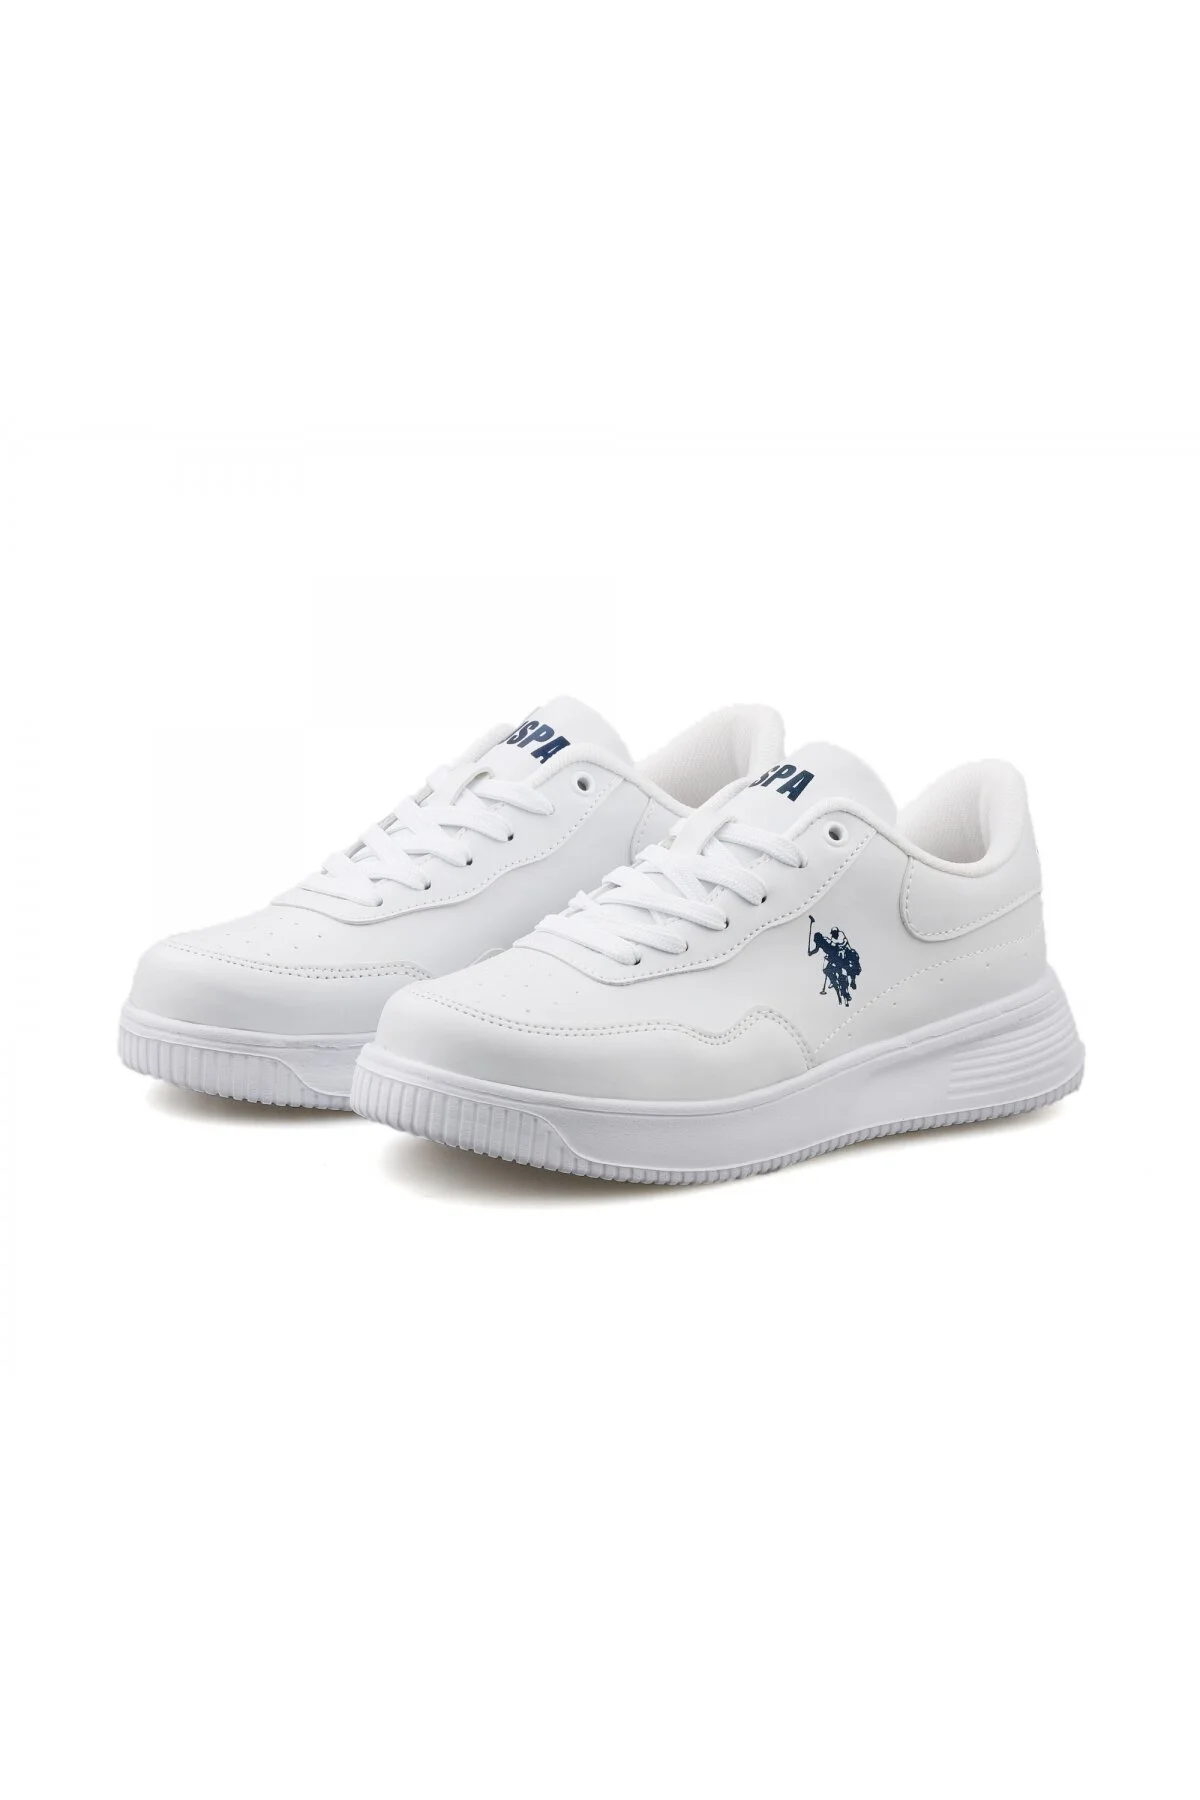 ABE 3FX Kadın Sneaker Spor Ayakkabı-Beyaz